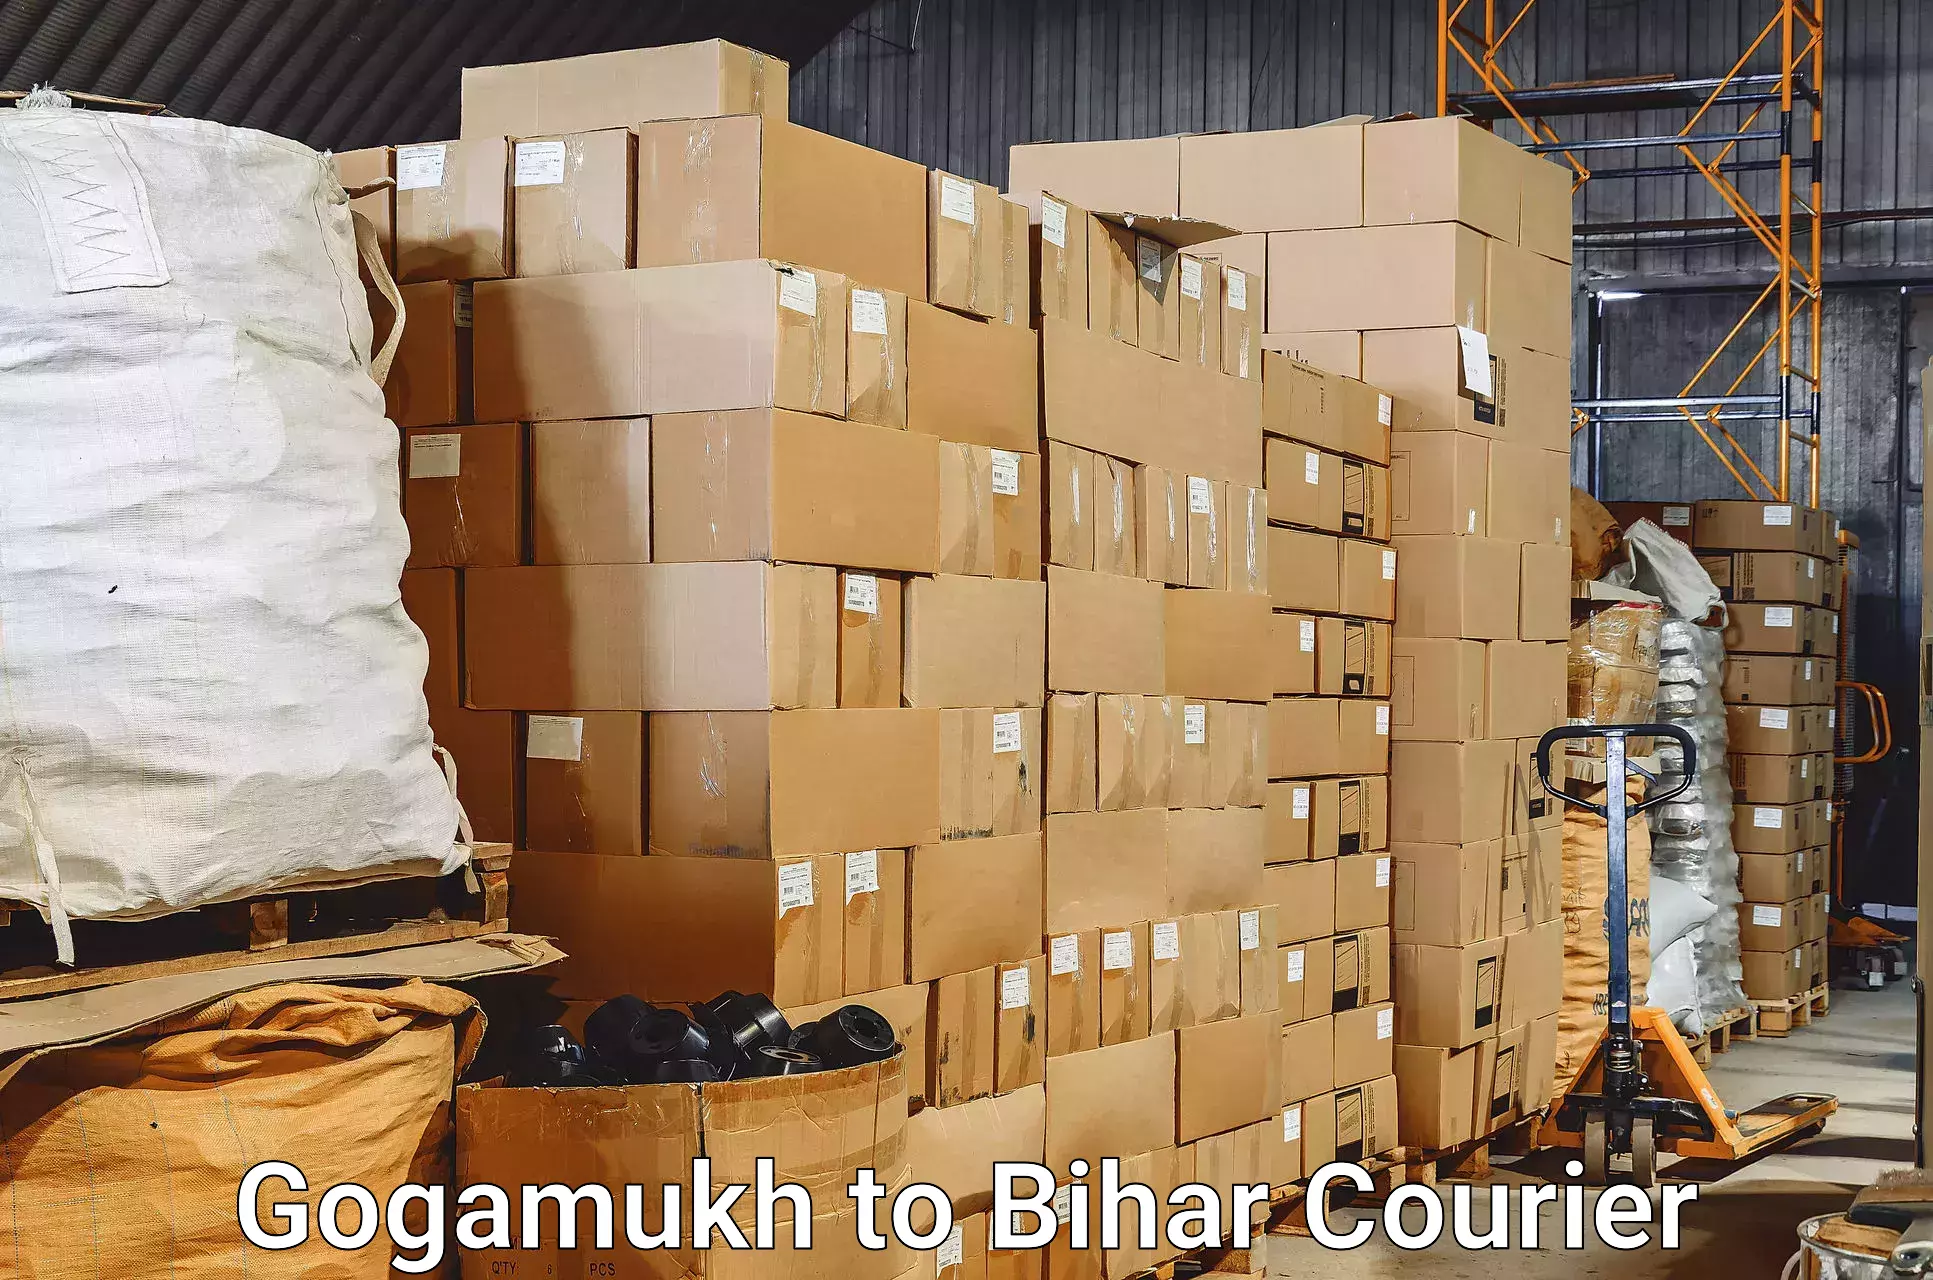 Express luggage delivery in Gogamukh to Maharajganj Vaishali